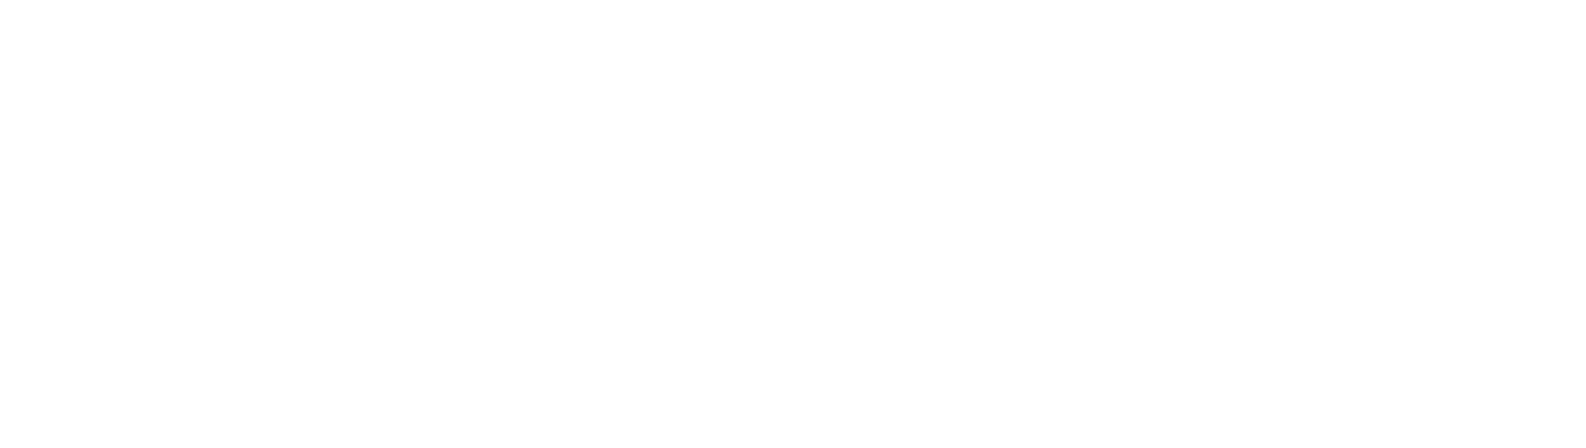 Invitae
 logo large for dark backgrounds (transparent PNG)